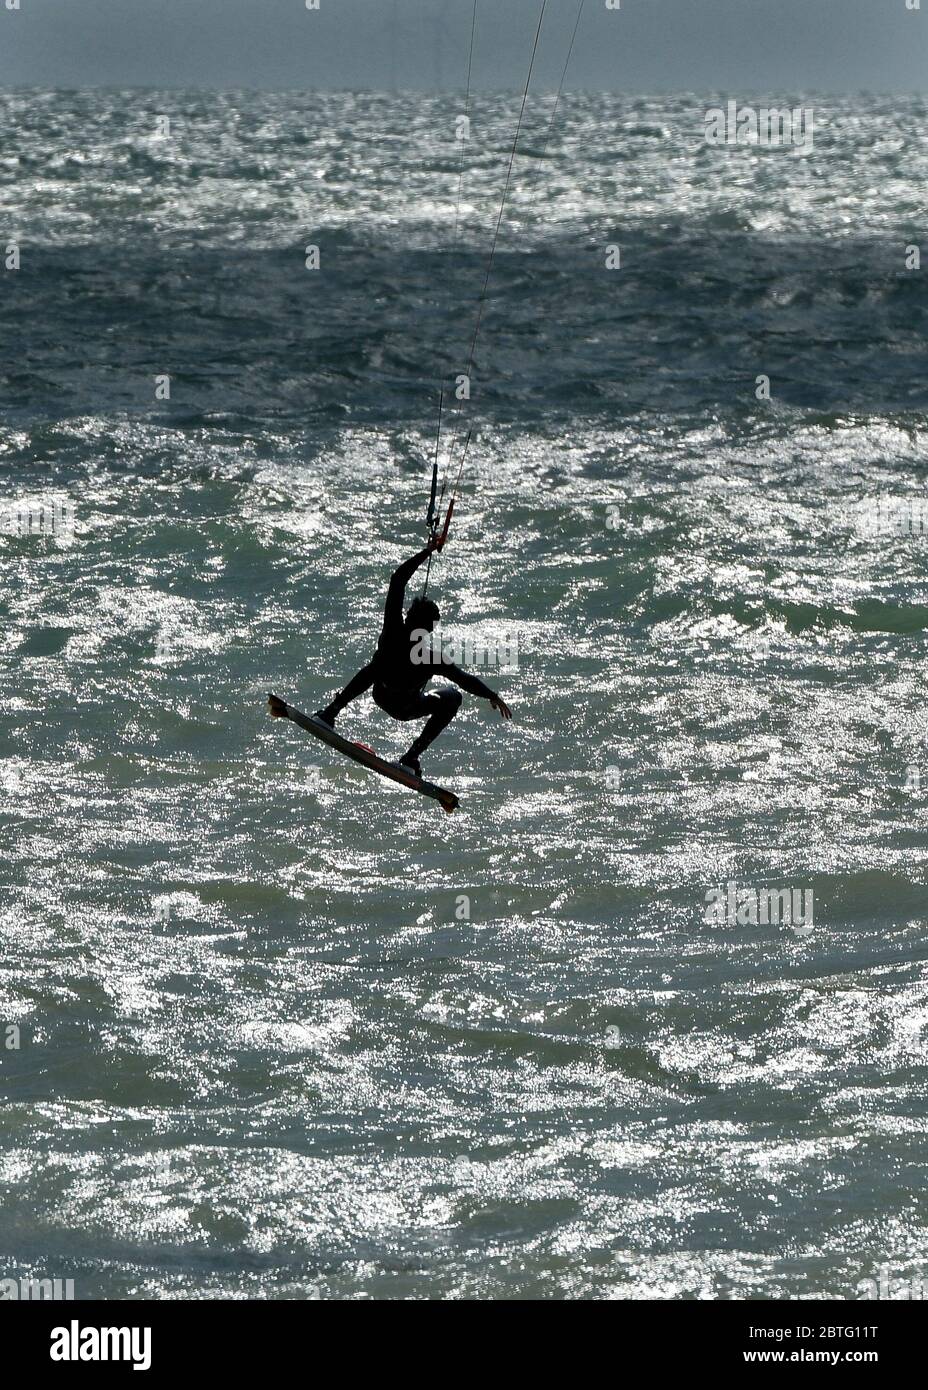 « Brighton 24th/25th Spring Holiday Weekend pendant #2020 levée partielle du blocage du coronavirus. Kite surfeur, jet ski, ski nautique et vue panoramique des baigneurs sur la plage crédit: Leo Mason sports/Alay Live News Banque D'Images